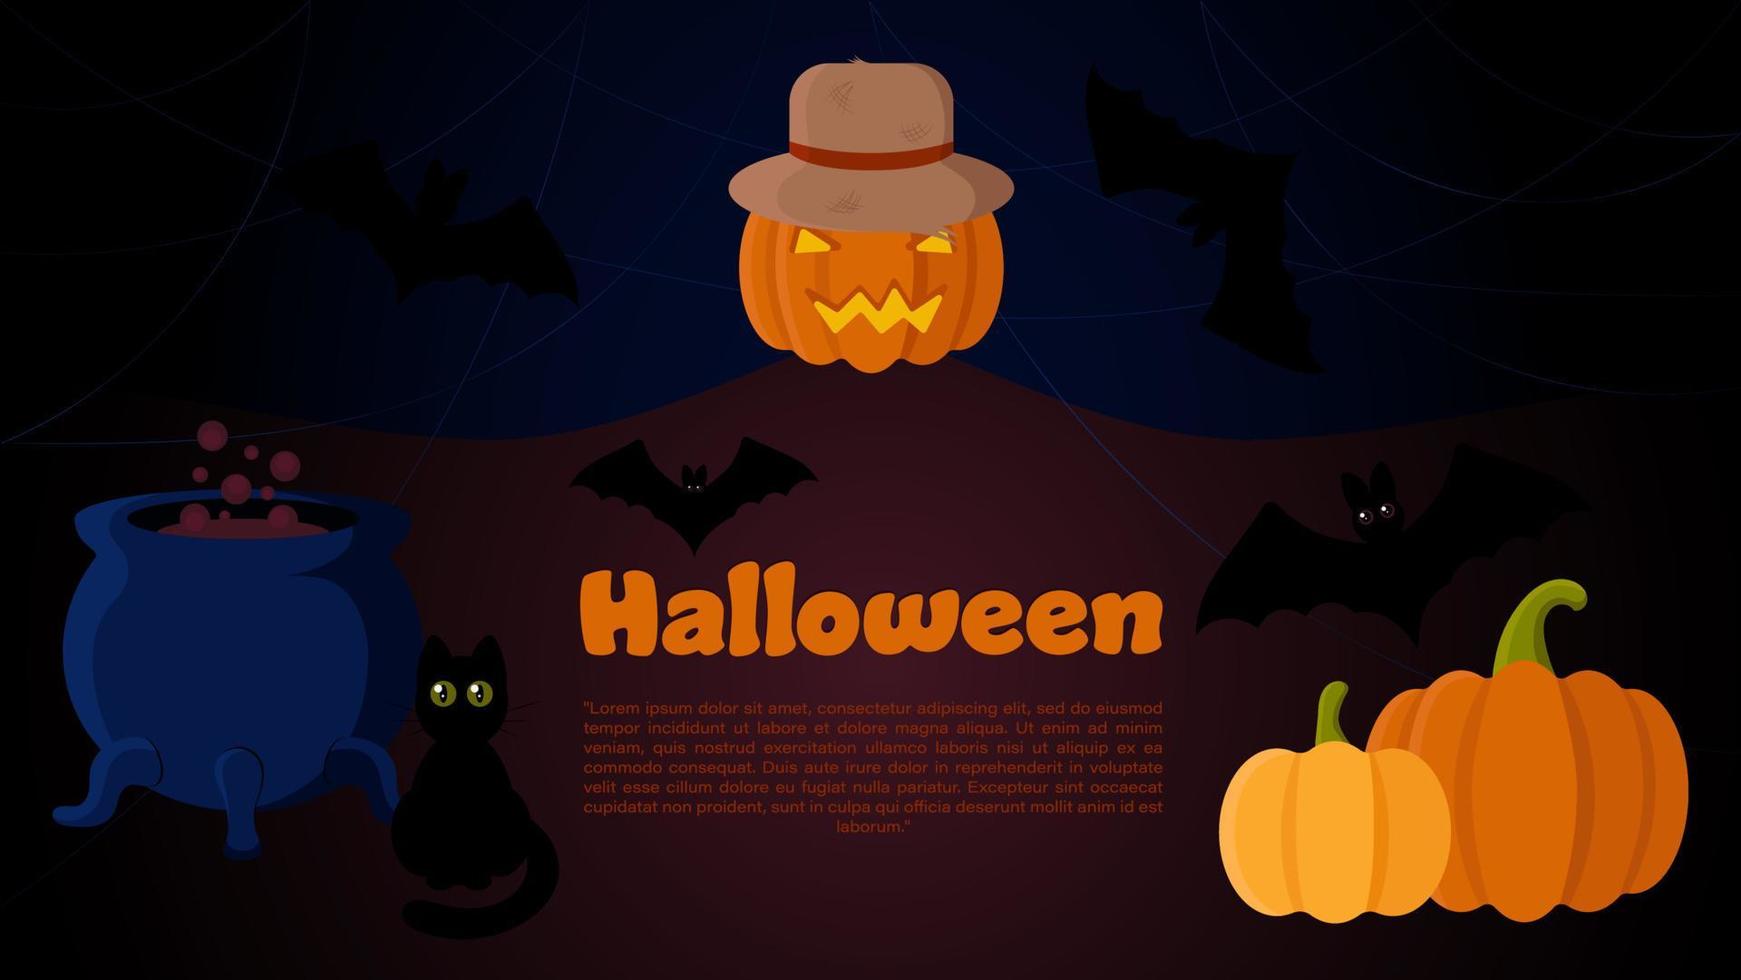 plantilla de banner vectorial de halloween con espantapájaros jack o'lantern, calabazas, caldero de bruja, siluetas de gatos y murciélagos. perfecto para sitios web, redes sociales, materiales impresos, etc. vector